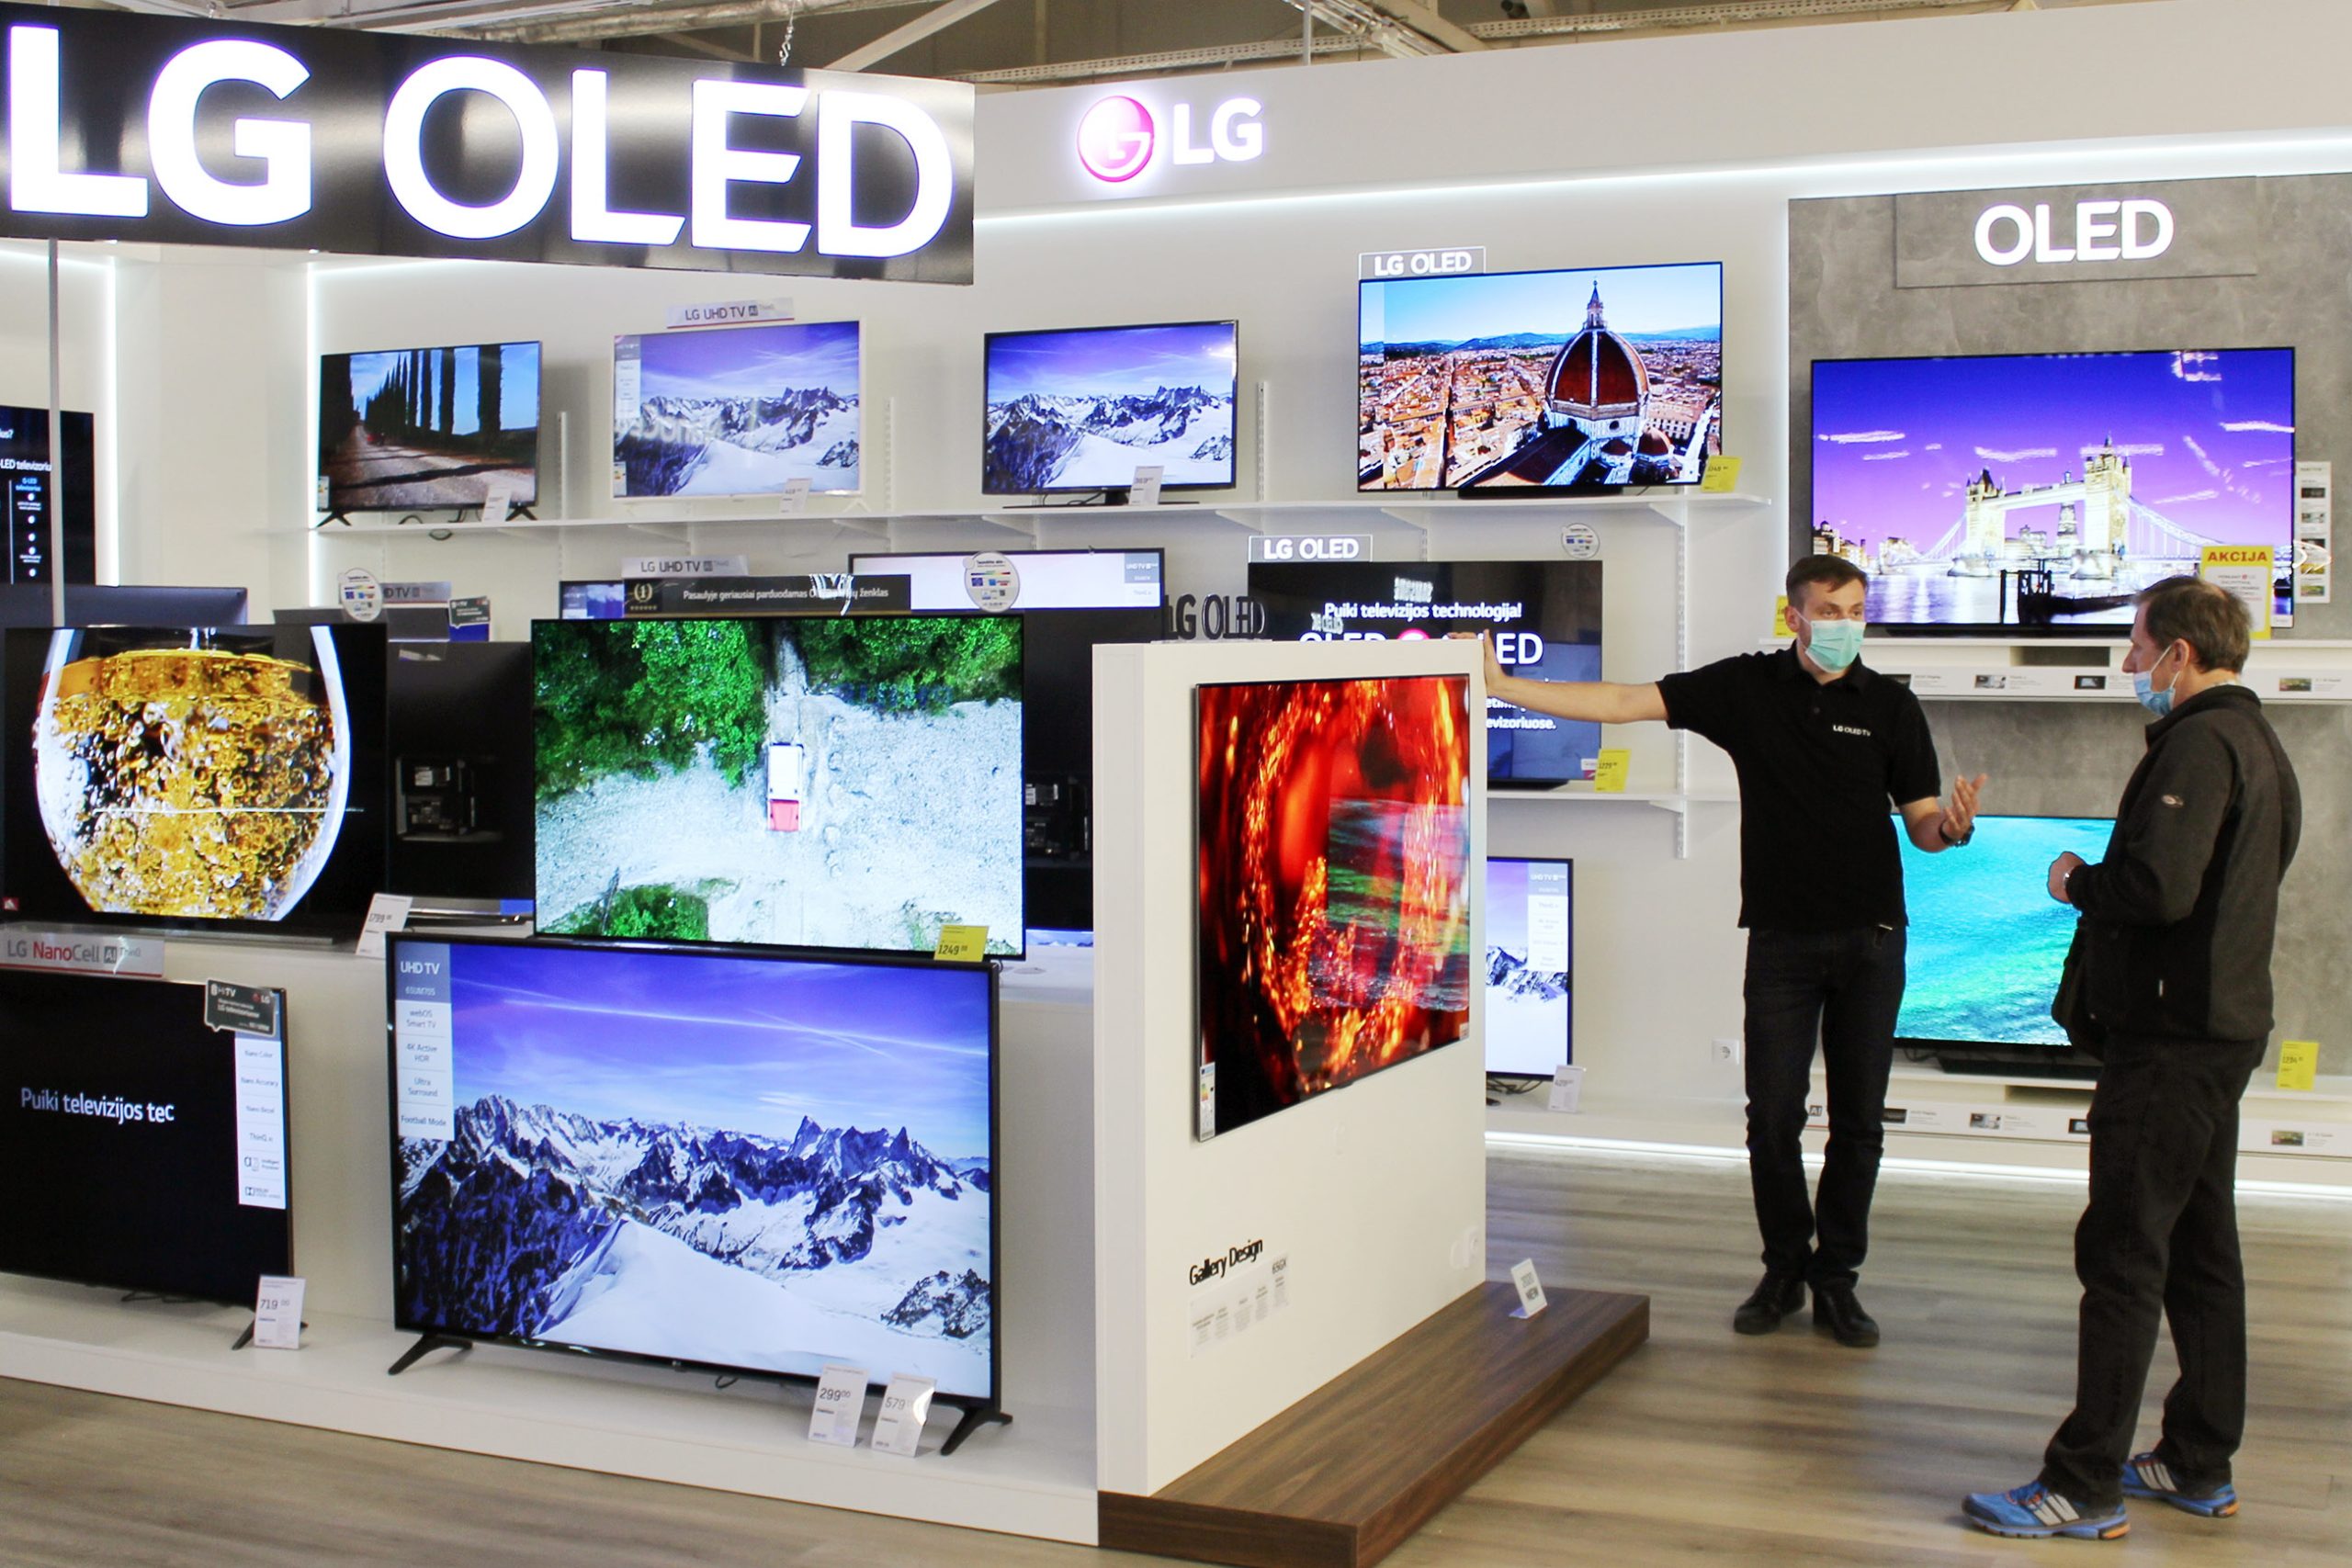 리투아니아 카우나스(Kaunas)市에 위치한 가전 매장을 찾은 고객이 LG 올레드 갤러리 TV를 둘러보고 있다